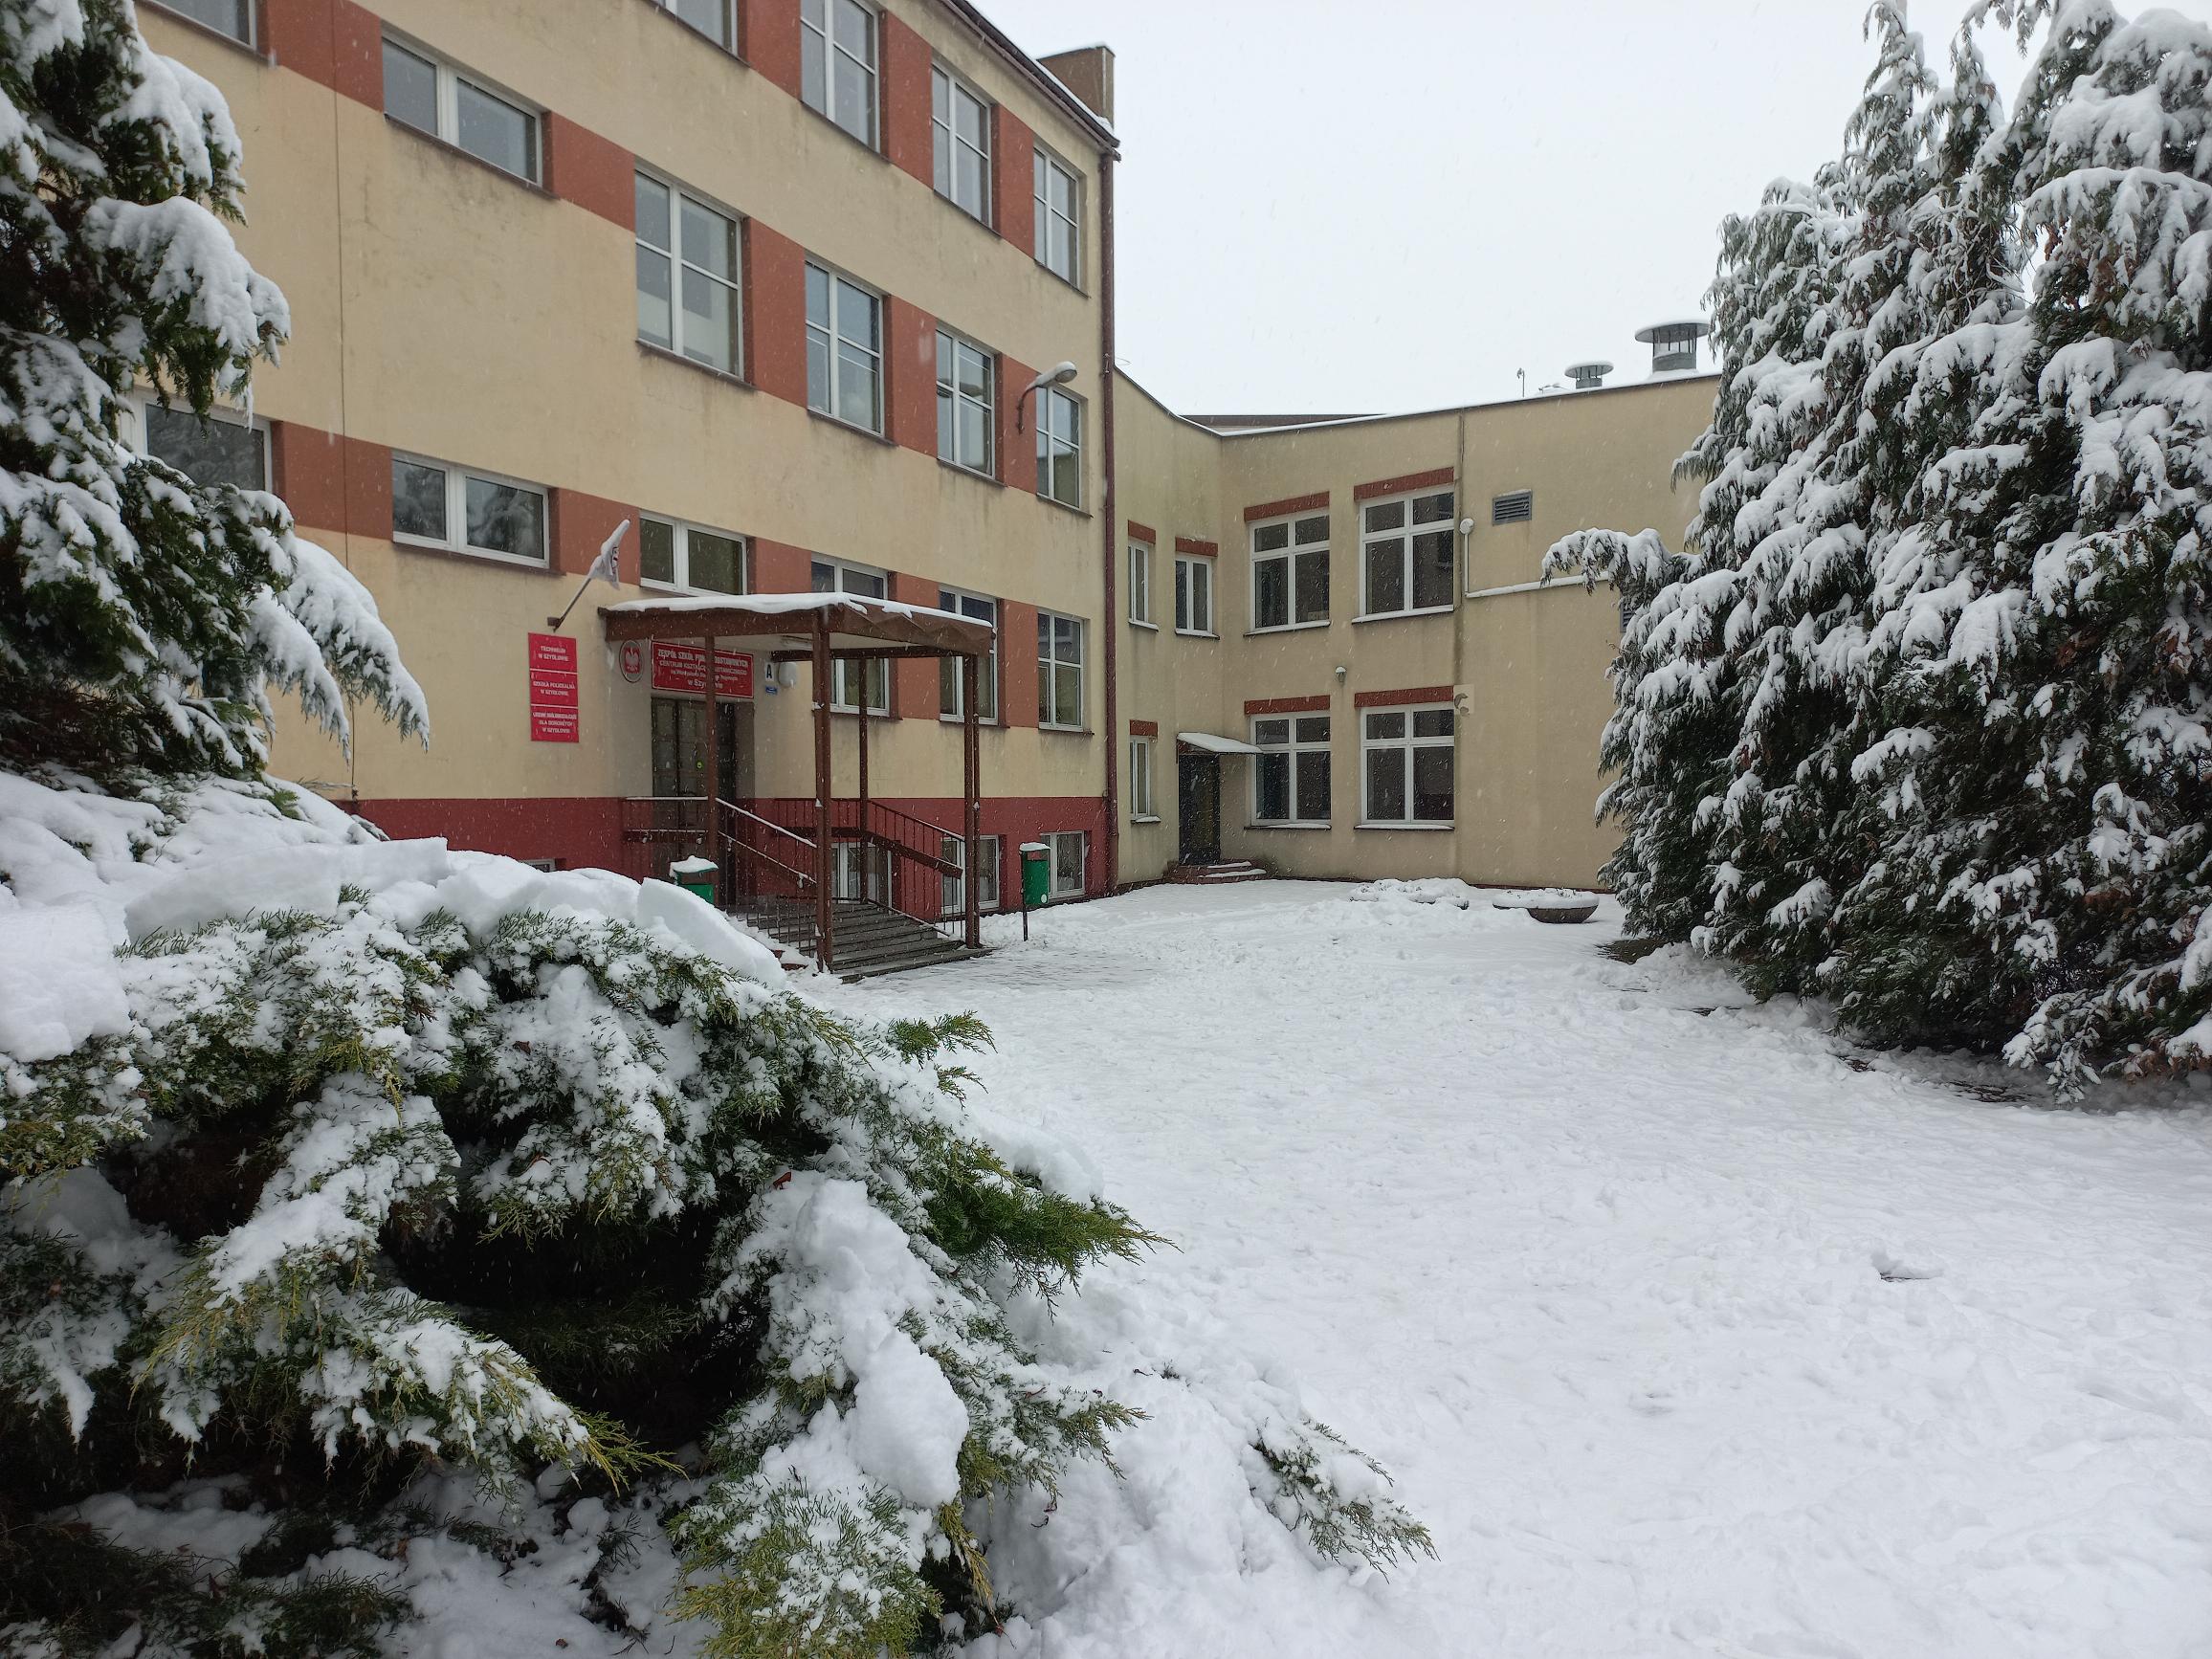 zimowa szkoła :)